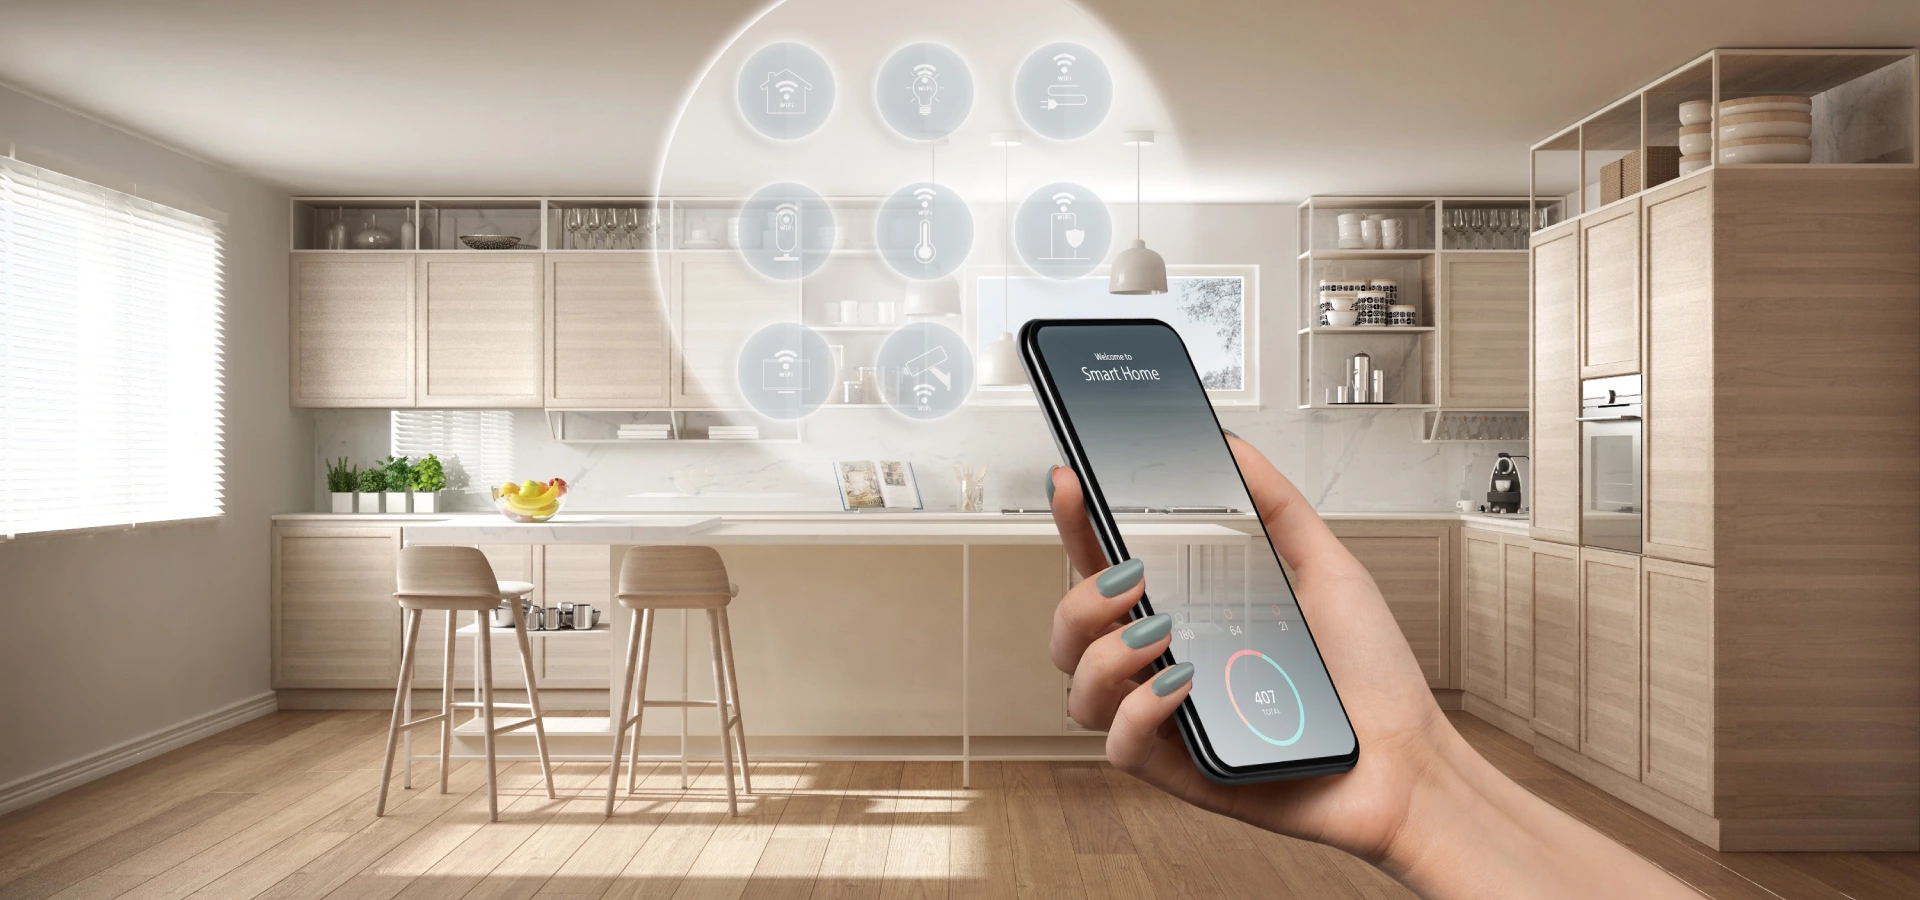 Smart-Home - intuicyjne zarządzanie inteligentnym domem ze smartfona